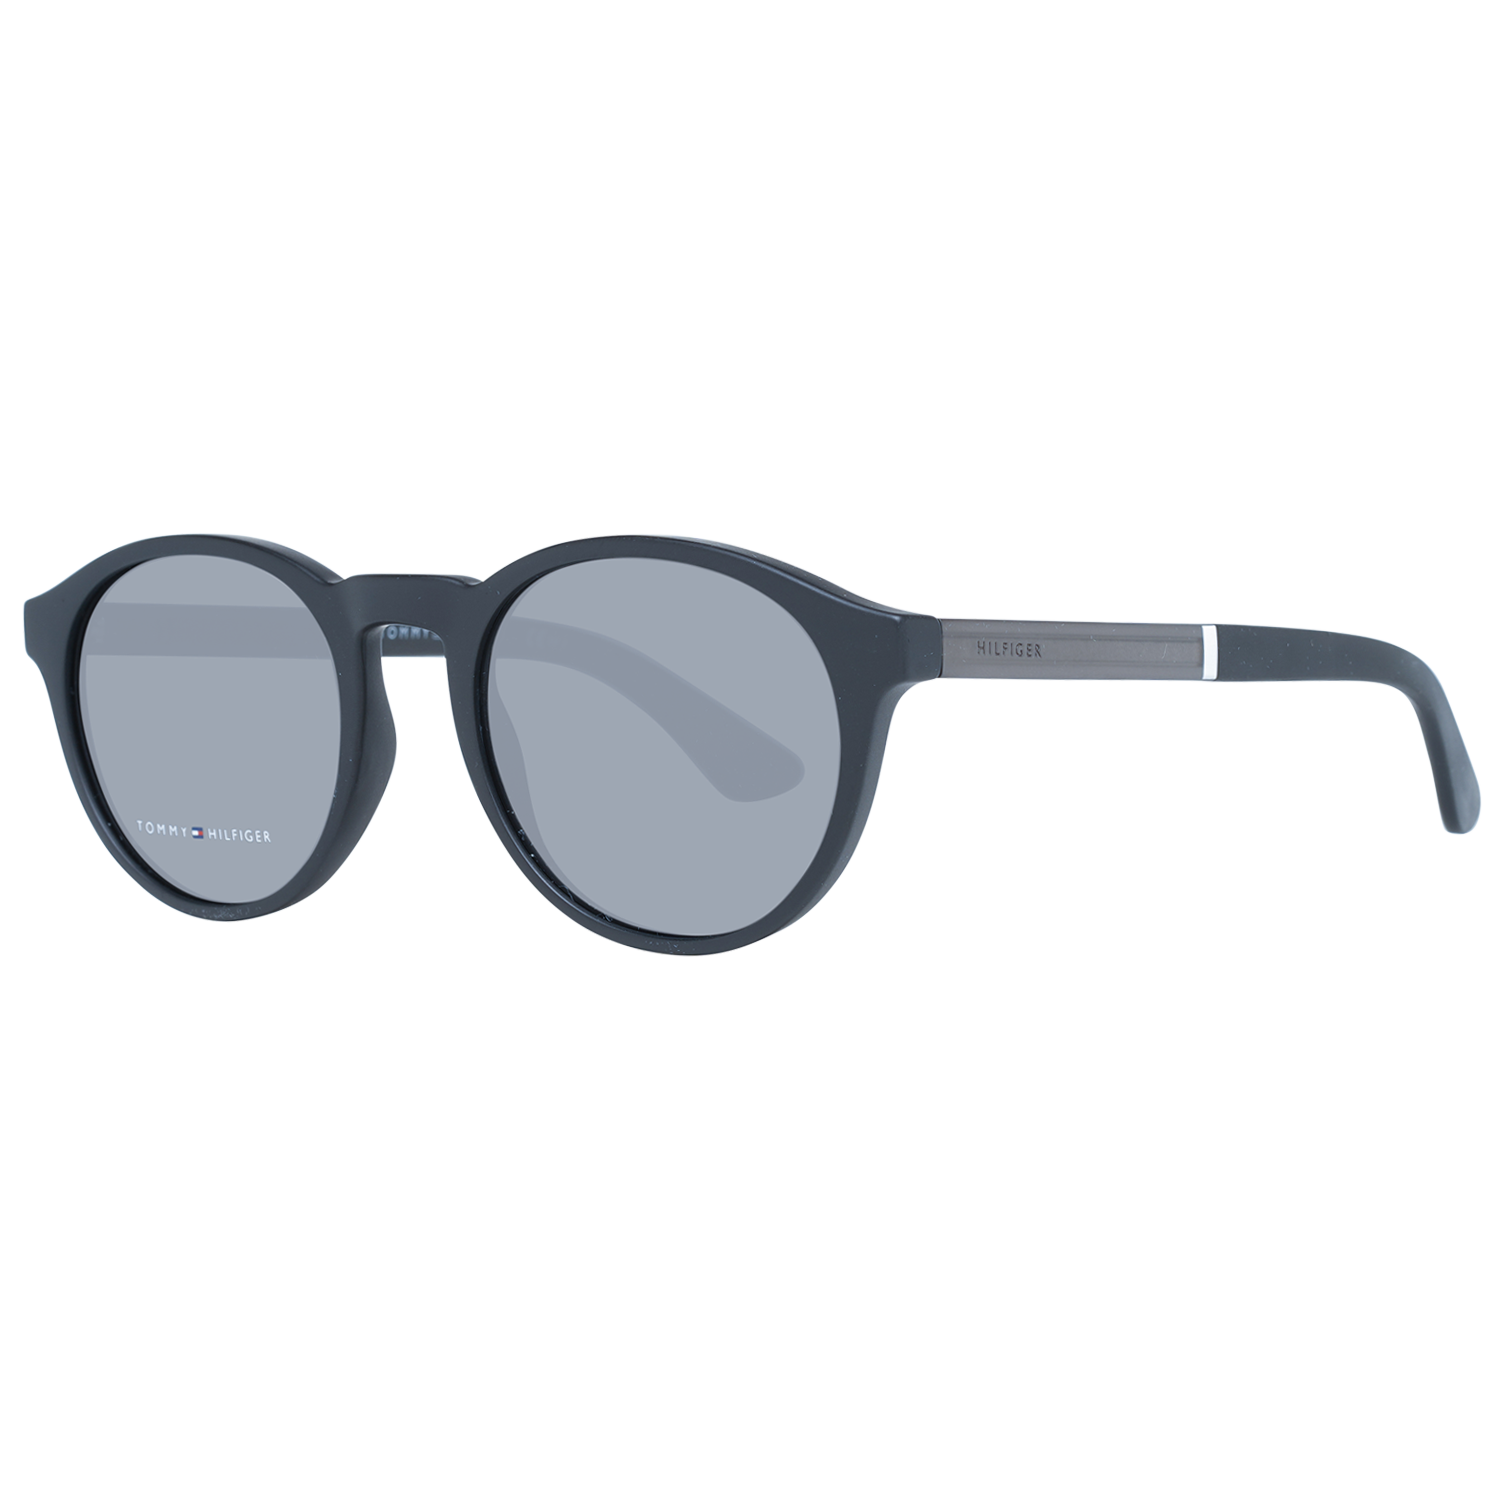 Tommy Hilfiger Sunglasses Tommy Hilfiger Sunglasses TH 1476/S 51 003IR Eyeglasses Eyewear UK USA Australia 